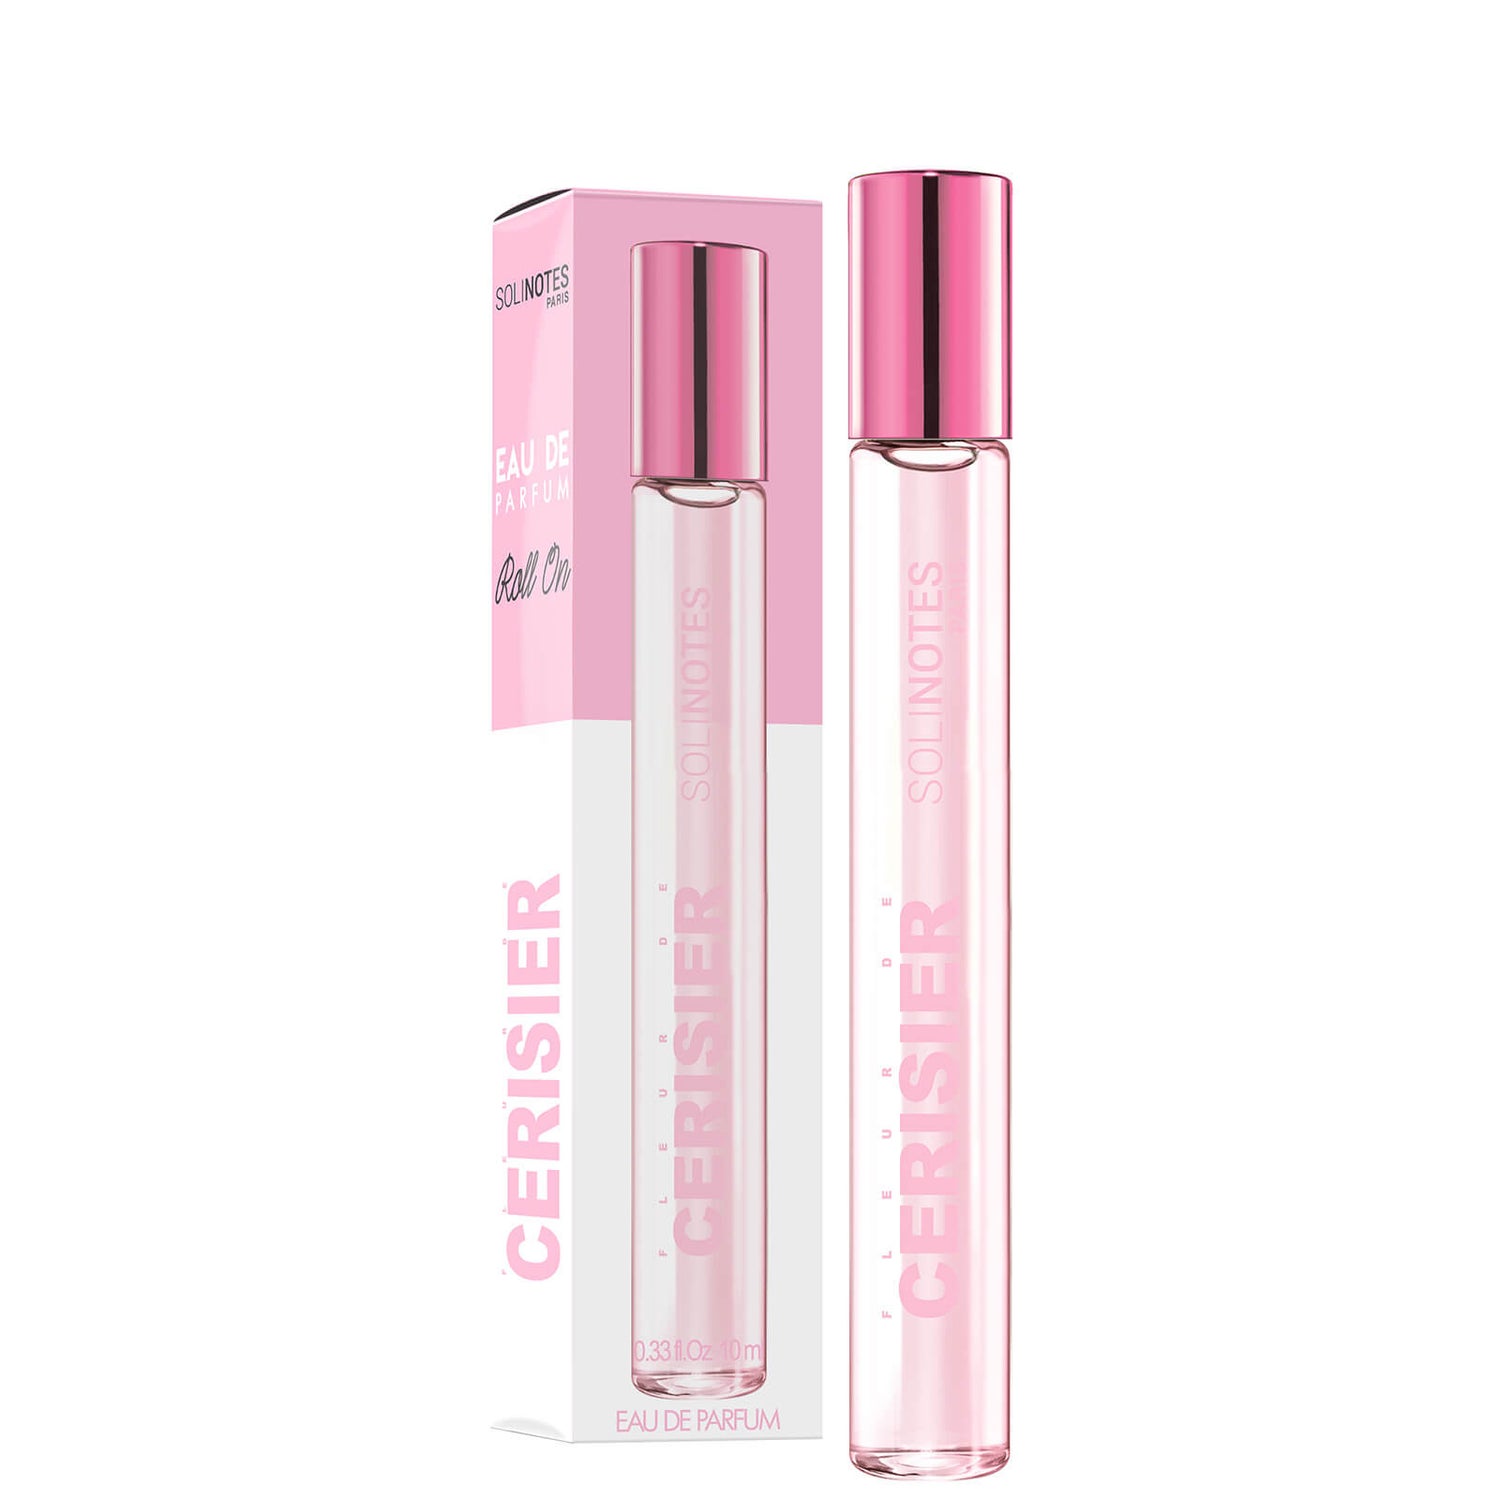 Solinotes Eau de Parfum Roll-On - Cherry Blossom 0.33 oz